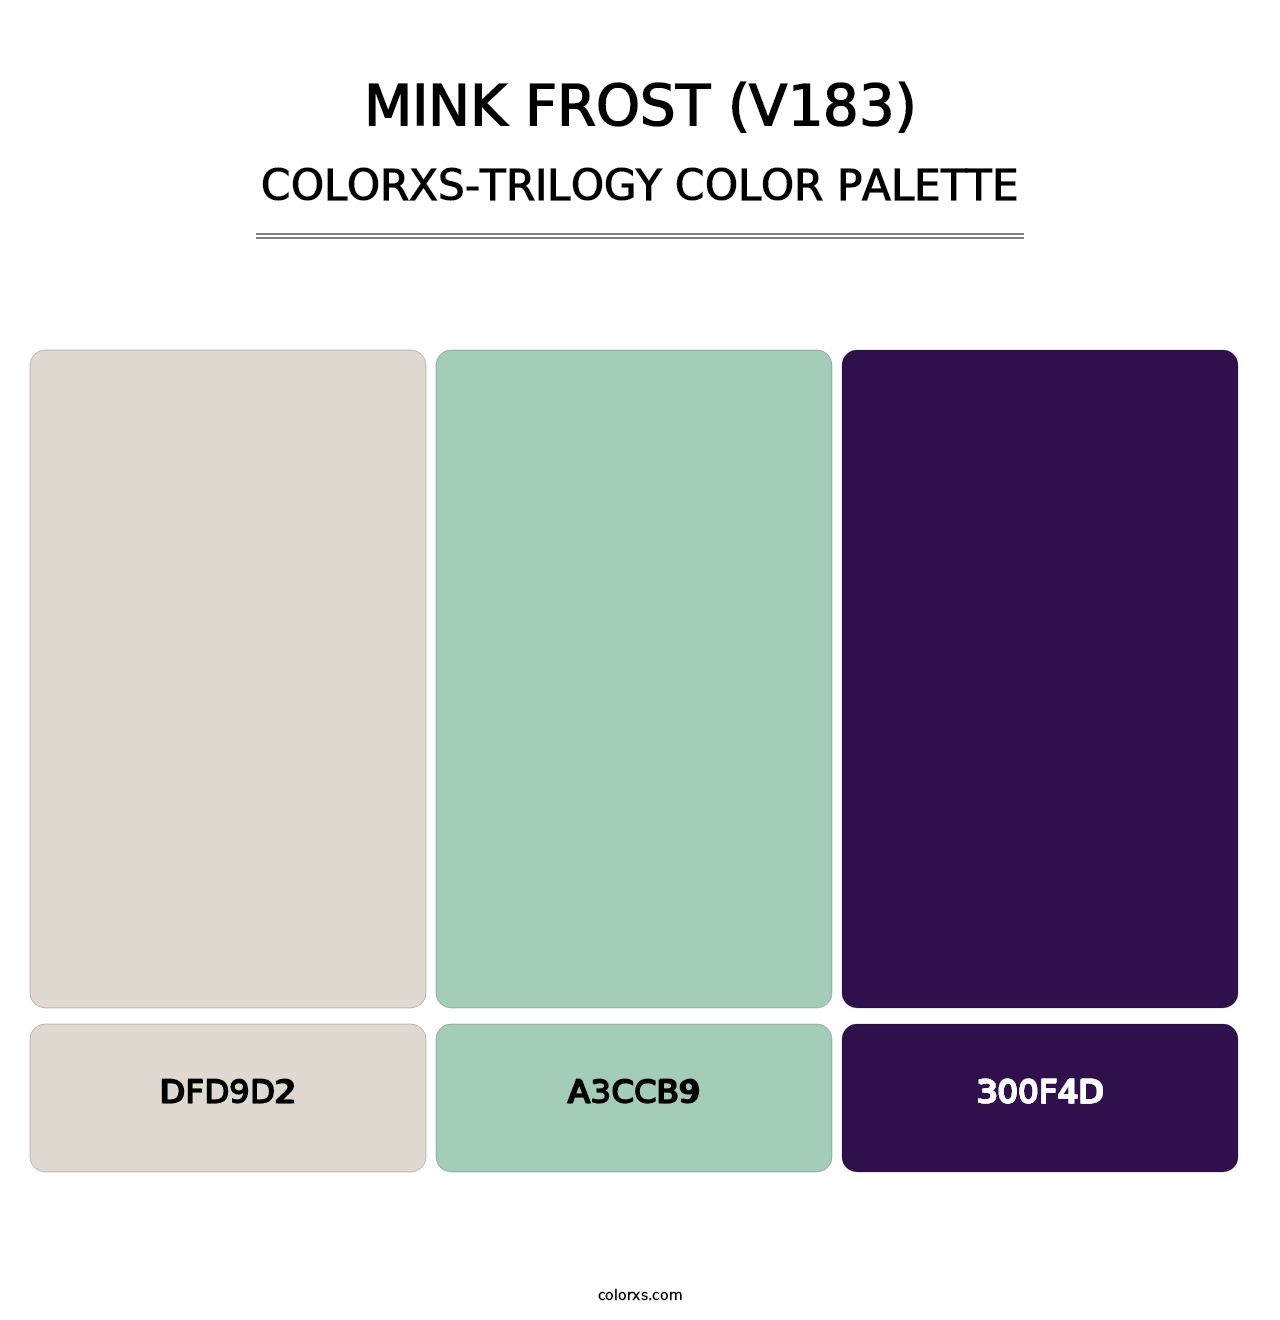 Mink Frost (V183) - Colorxs Trilogy Palette